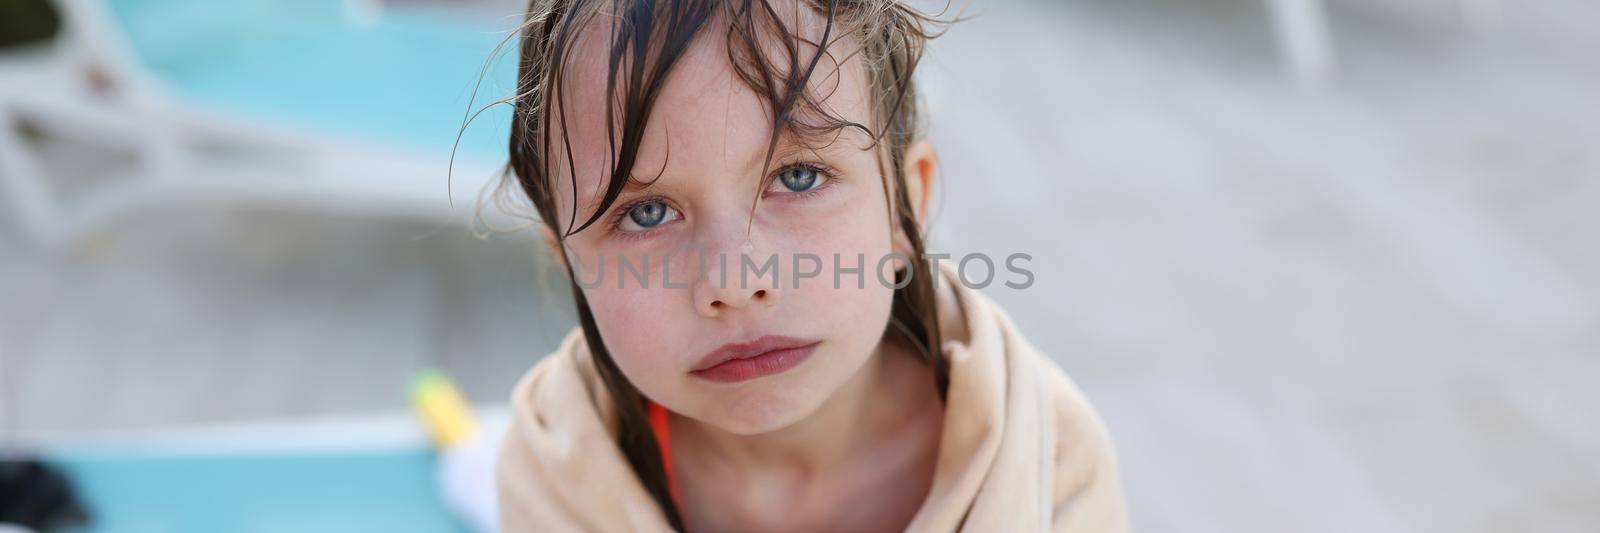 Little frozen girl in towel standing near swimming pool by kuprevich